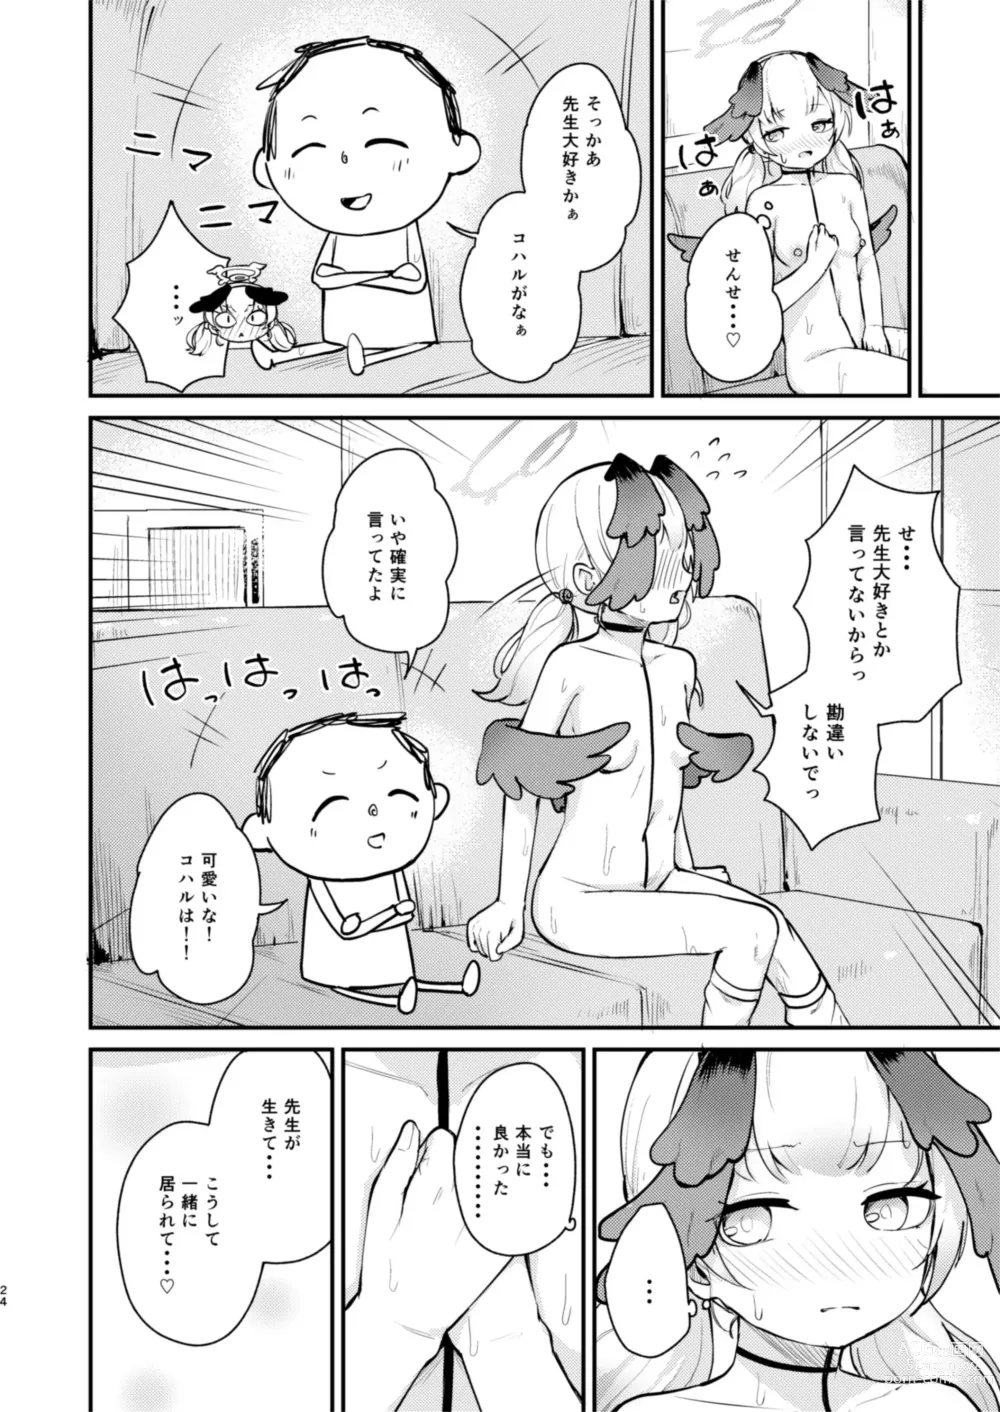 Page 23 of doujinshi Koharu wa, Kyou Musubareru.